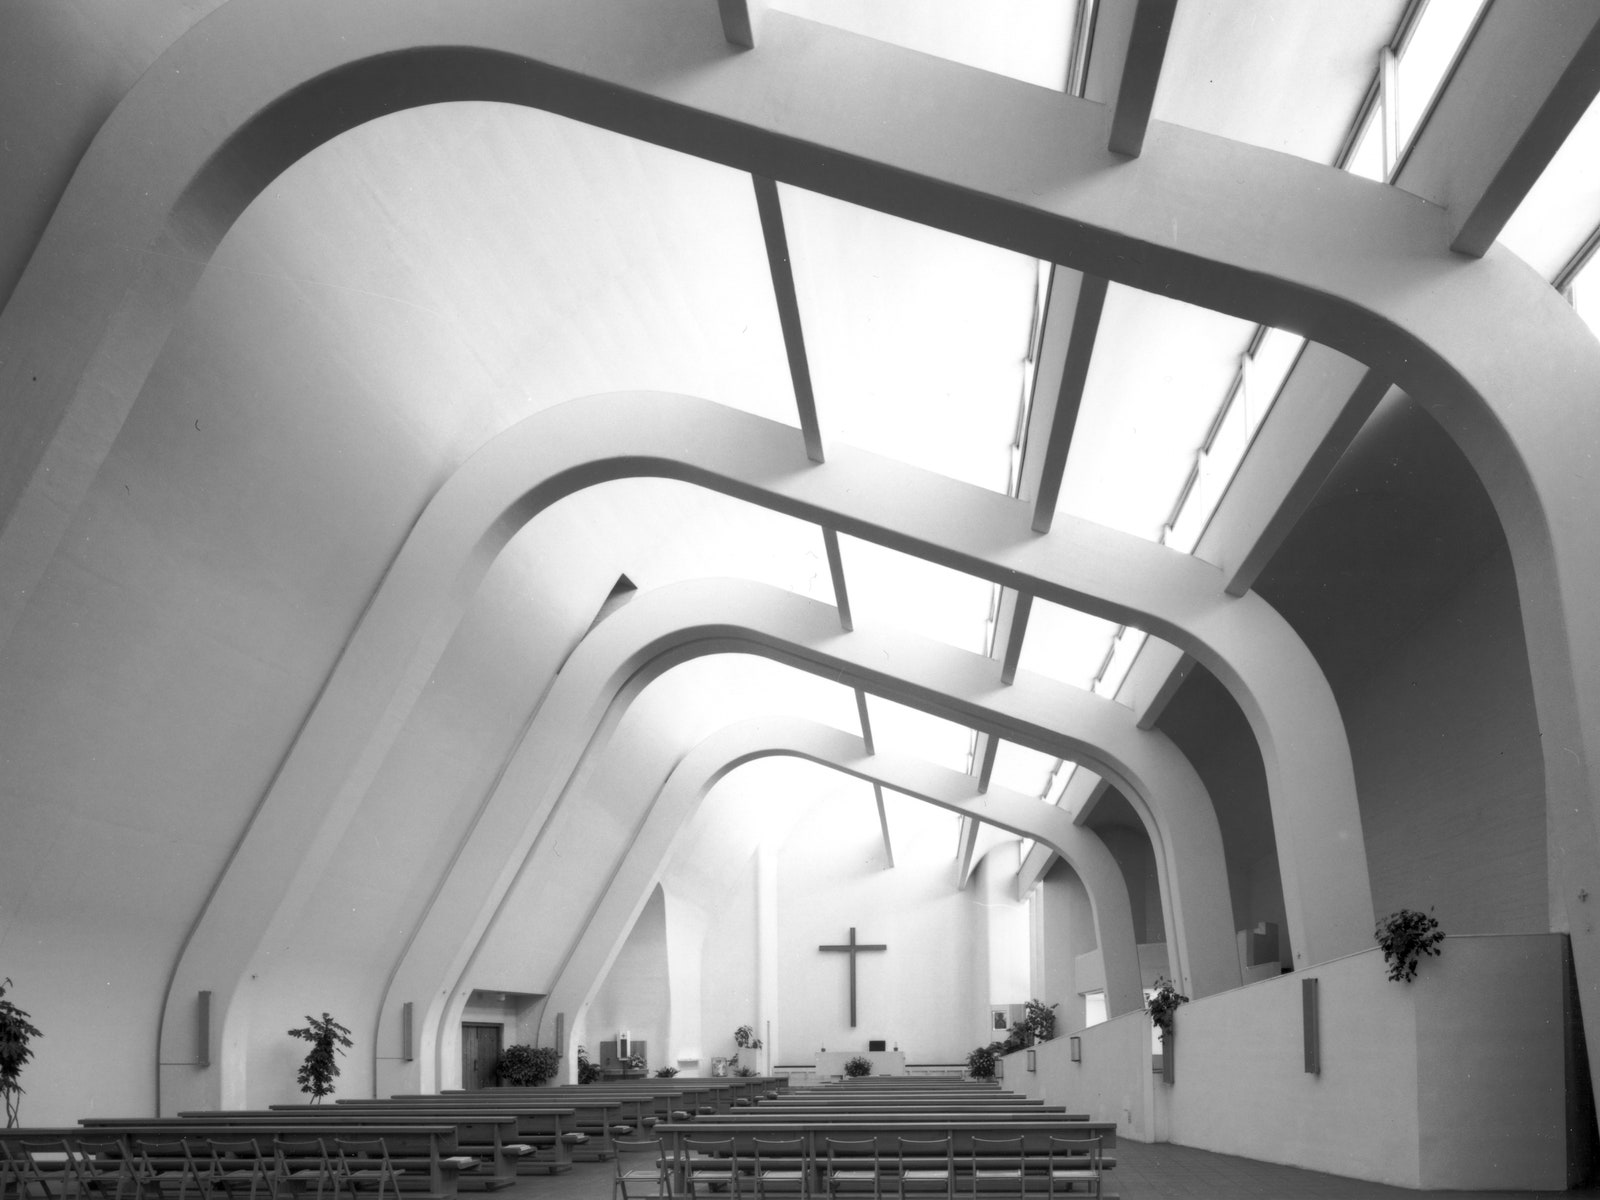 The divine case of Alvar Aalto’s ecclesiastical architecture